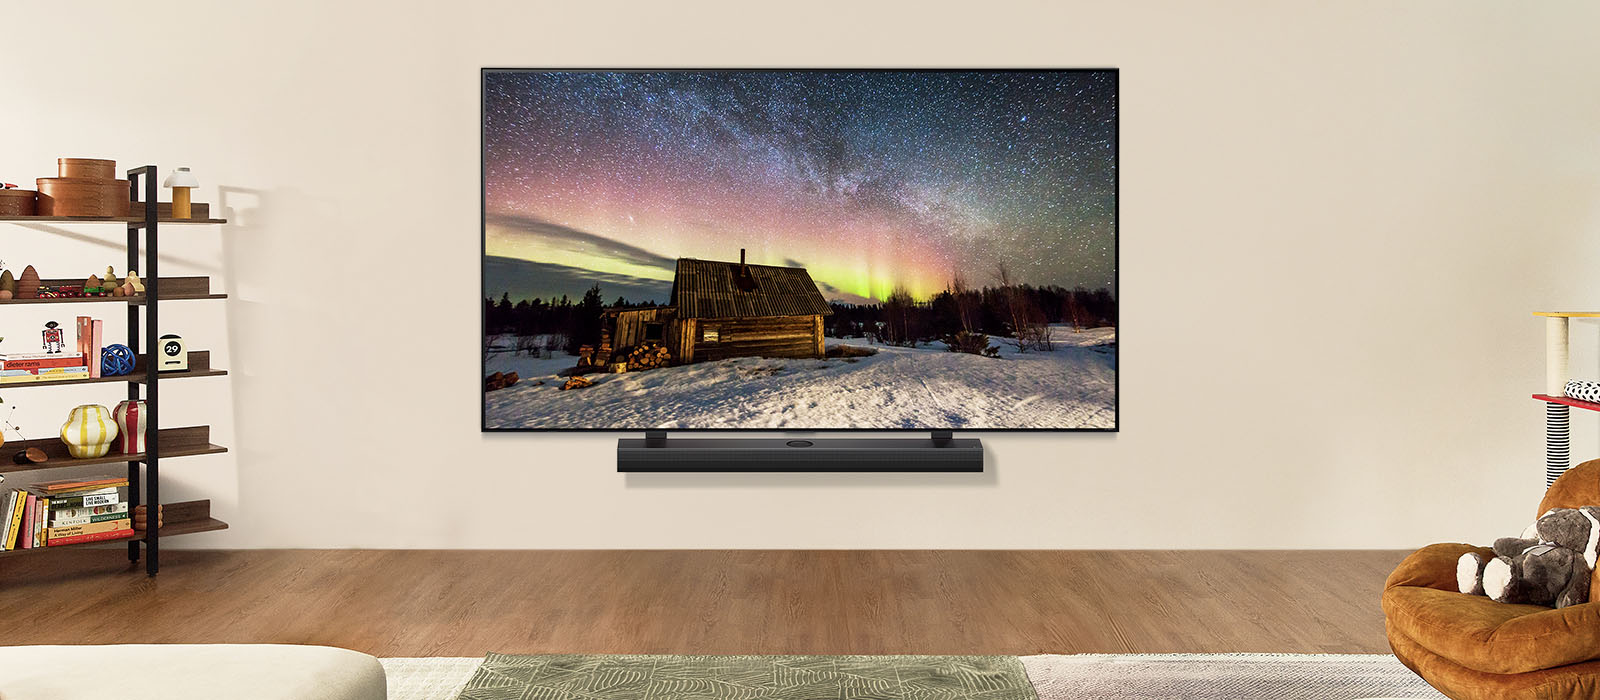 LG TV y una barra se sonido LG en un espacio moderno durante el día. La imagen de la aurora boreal se muestra con los niveles de brillo ideales